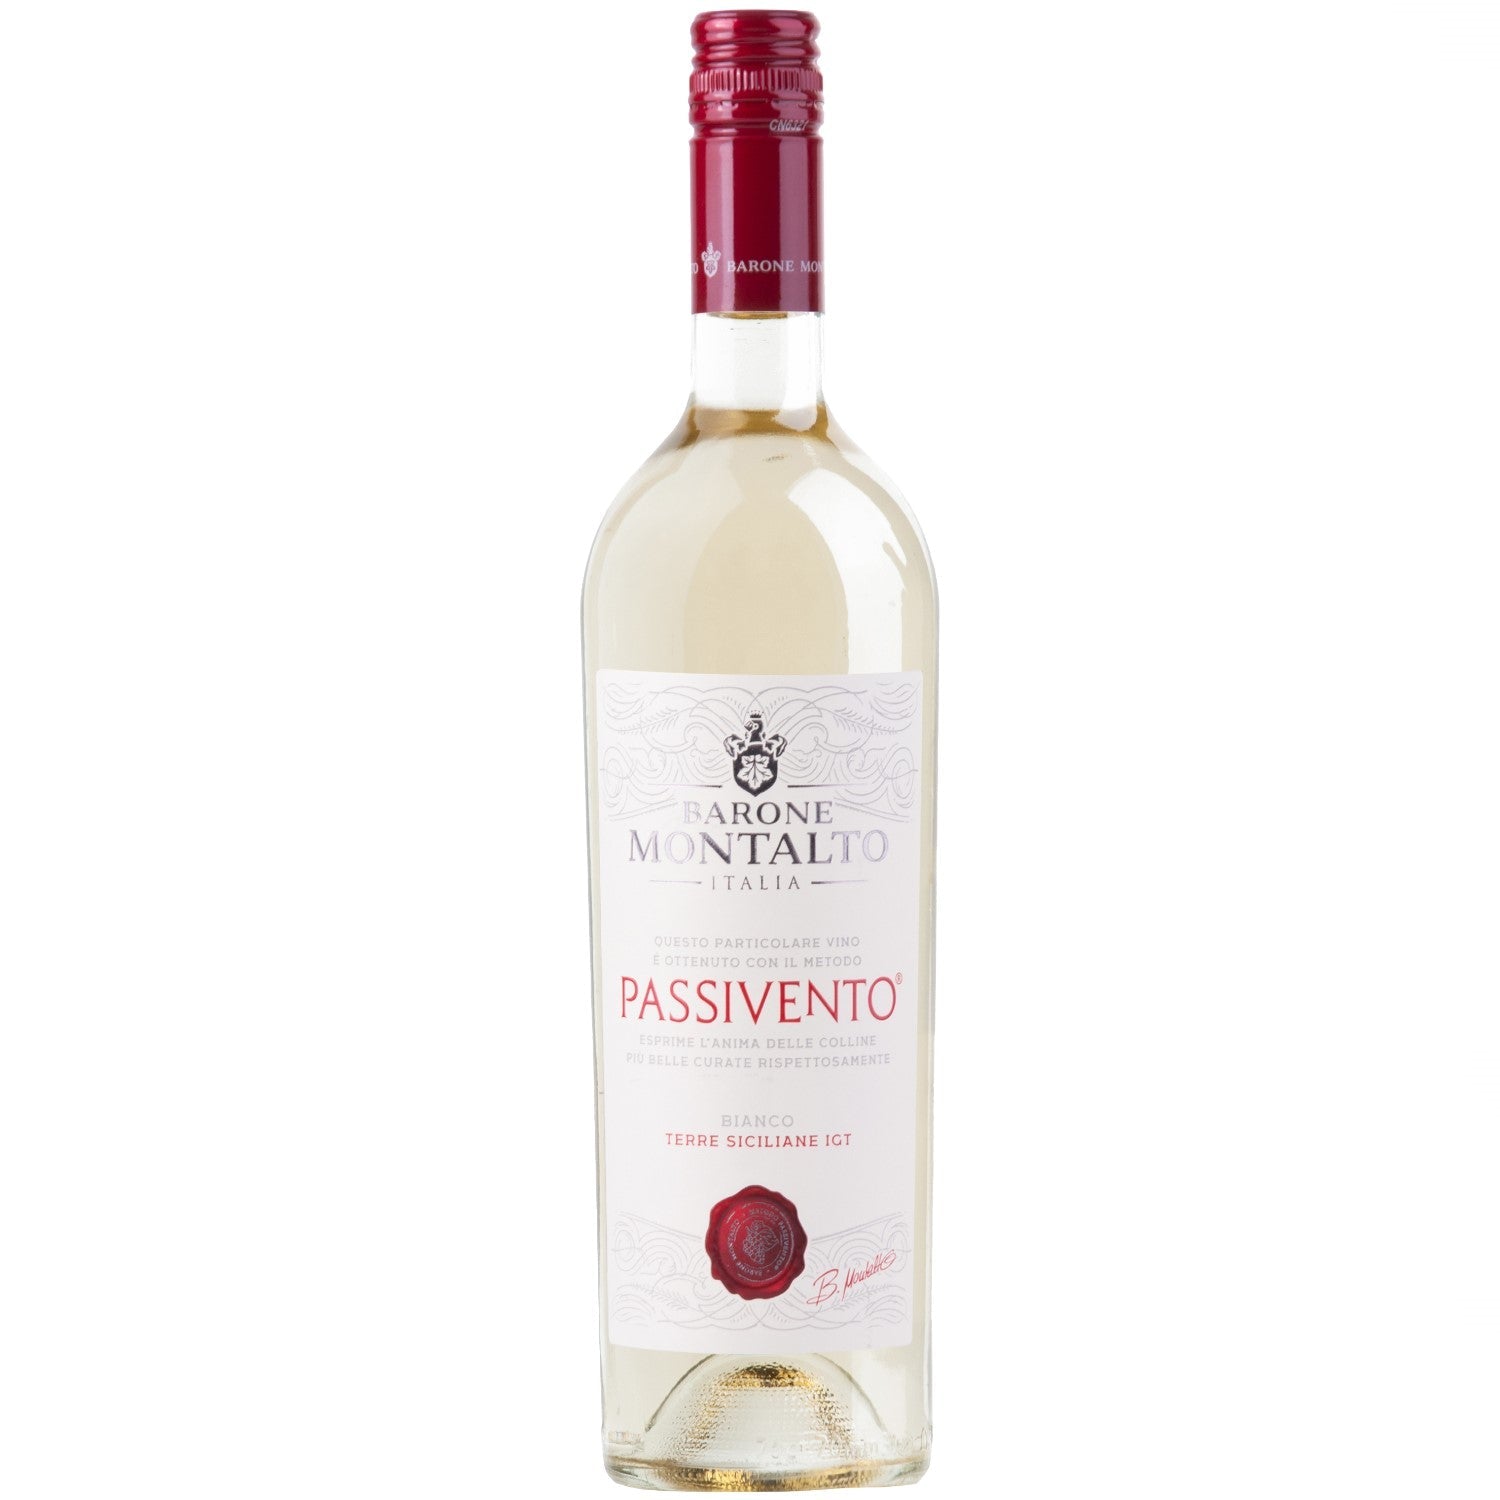 Barone Montalto Passivento Bianco Terre Siciliane IGT Weißwein Wein halbtrocken (3 x 0.75l) - Versanel -